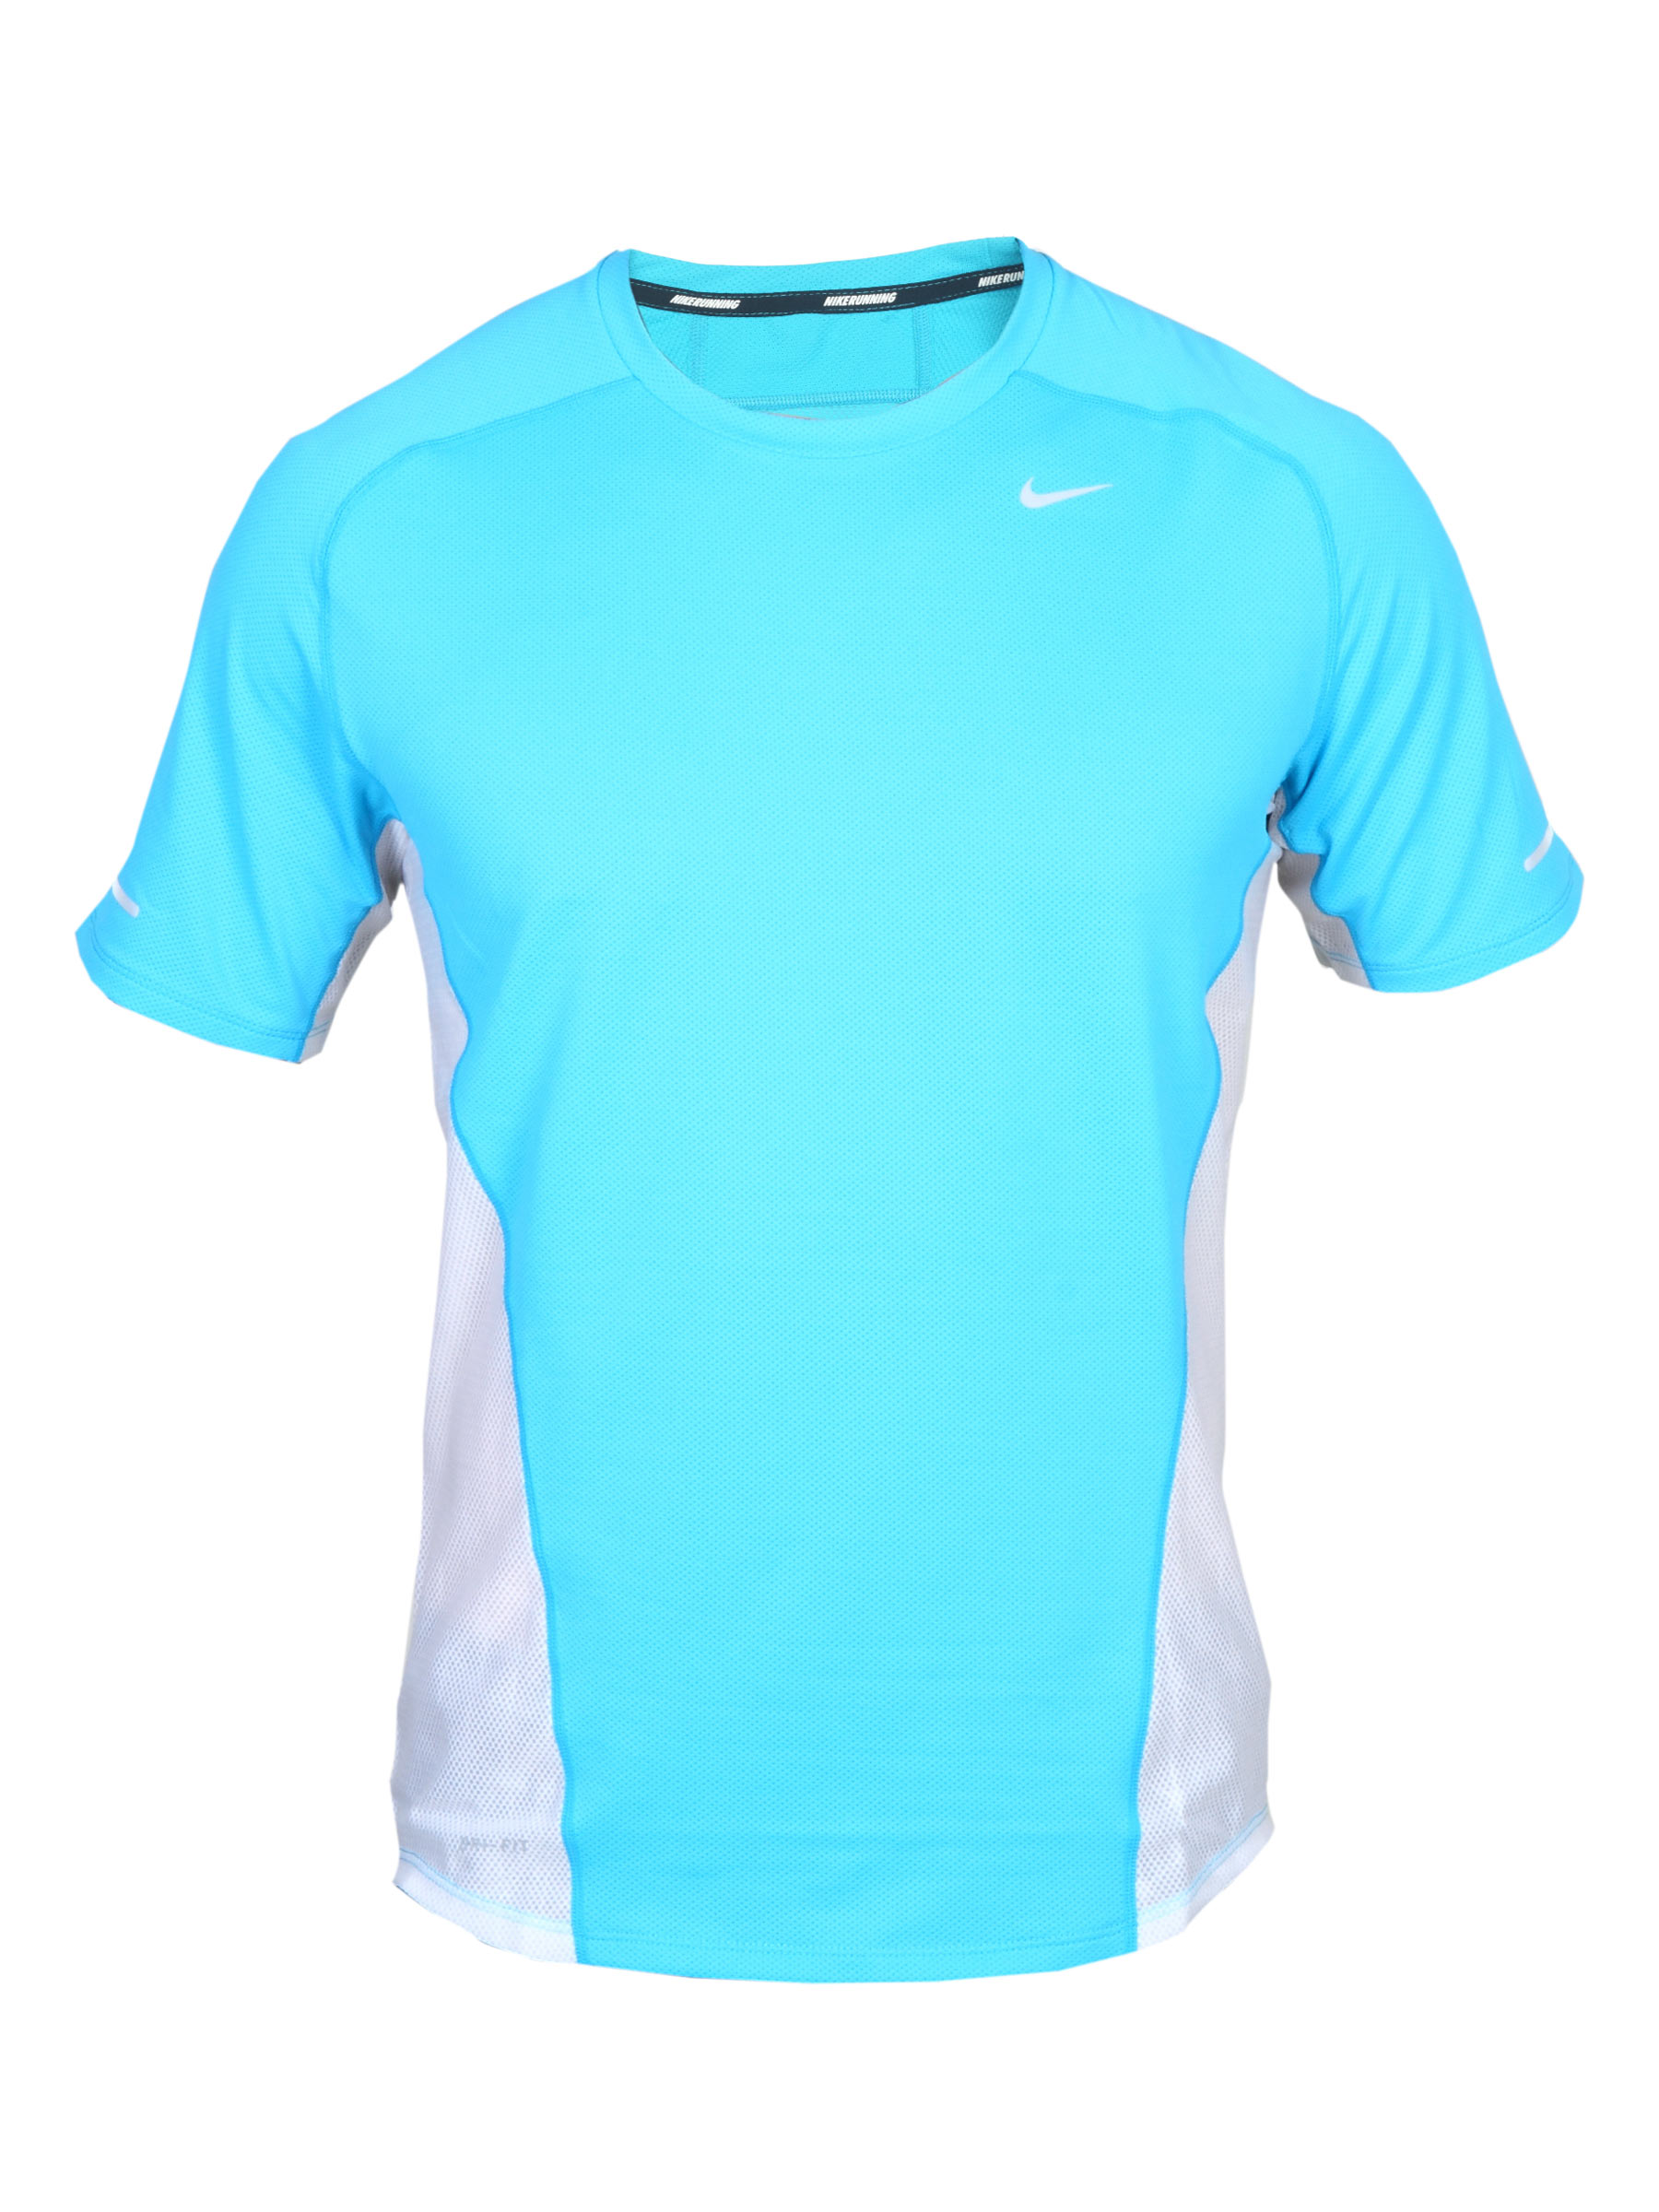 Nike men's As Spher Blue T-shirt